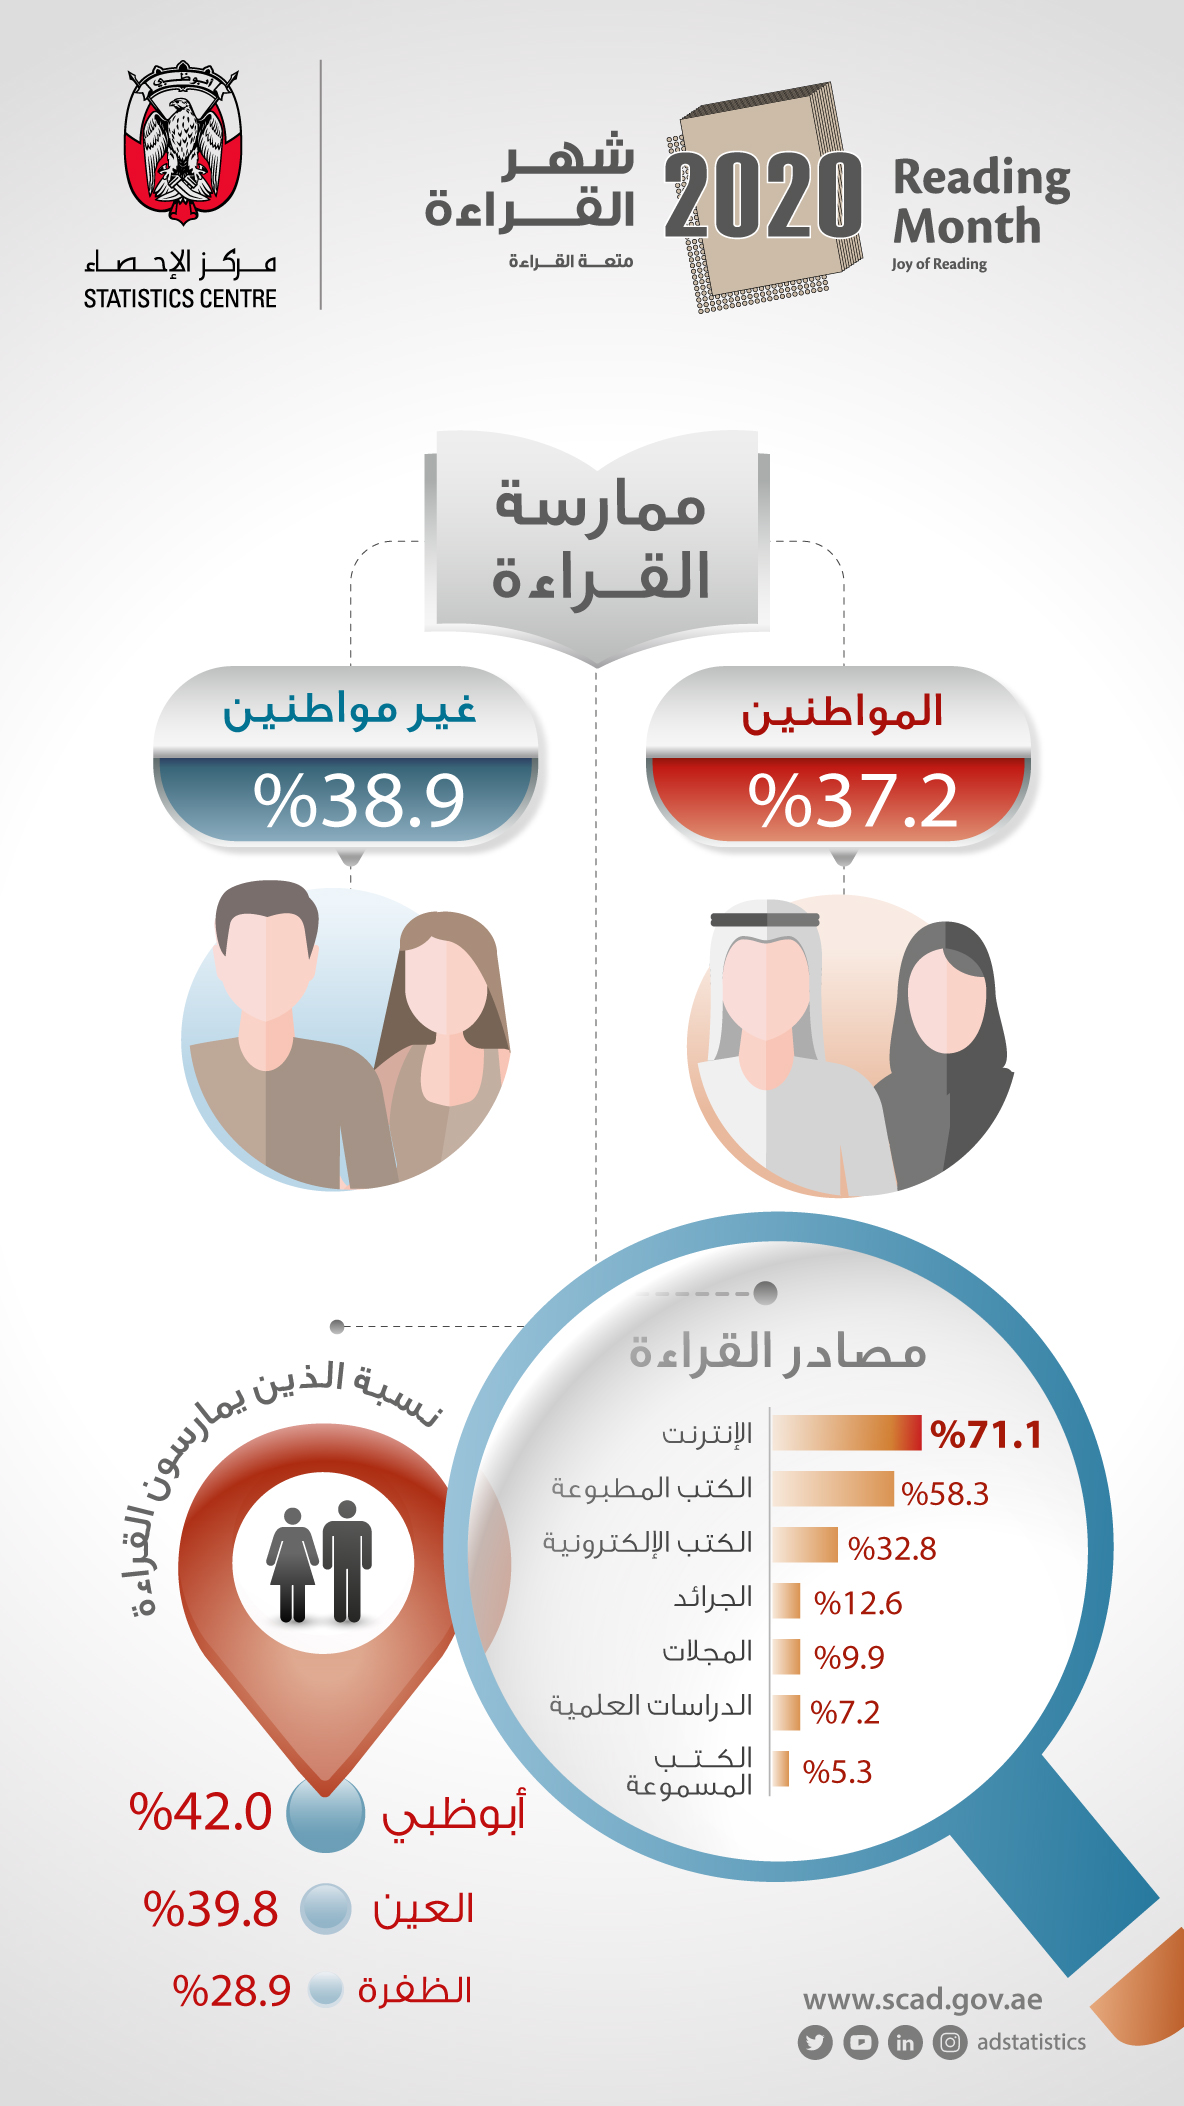 مركز الإحصاء أبوظبي يصدر نتائج استطلاع الرأي للقراءة في إمارة أبوظبي لعام 2020